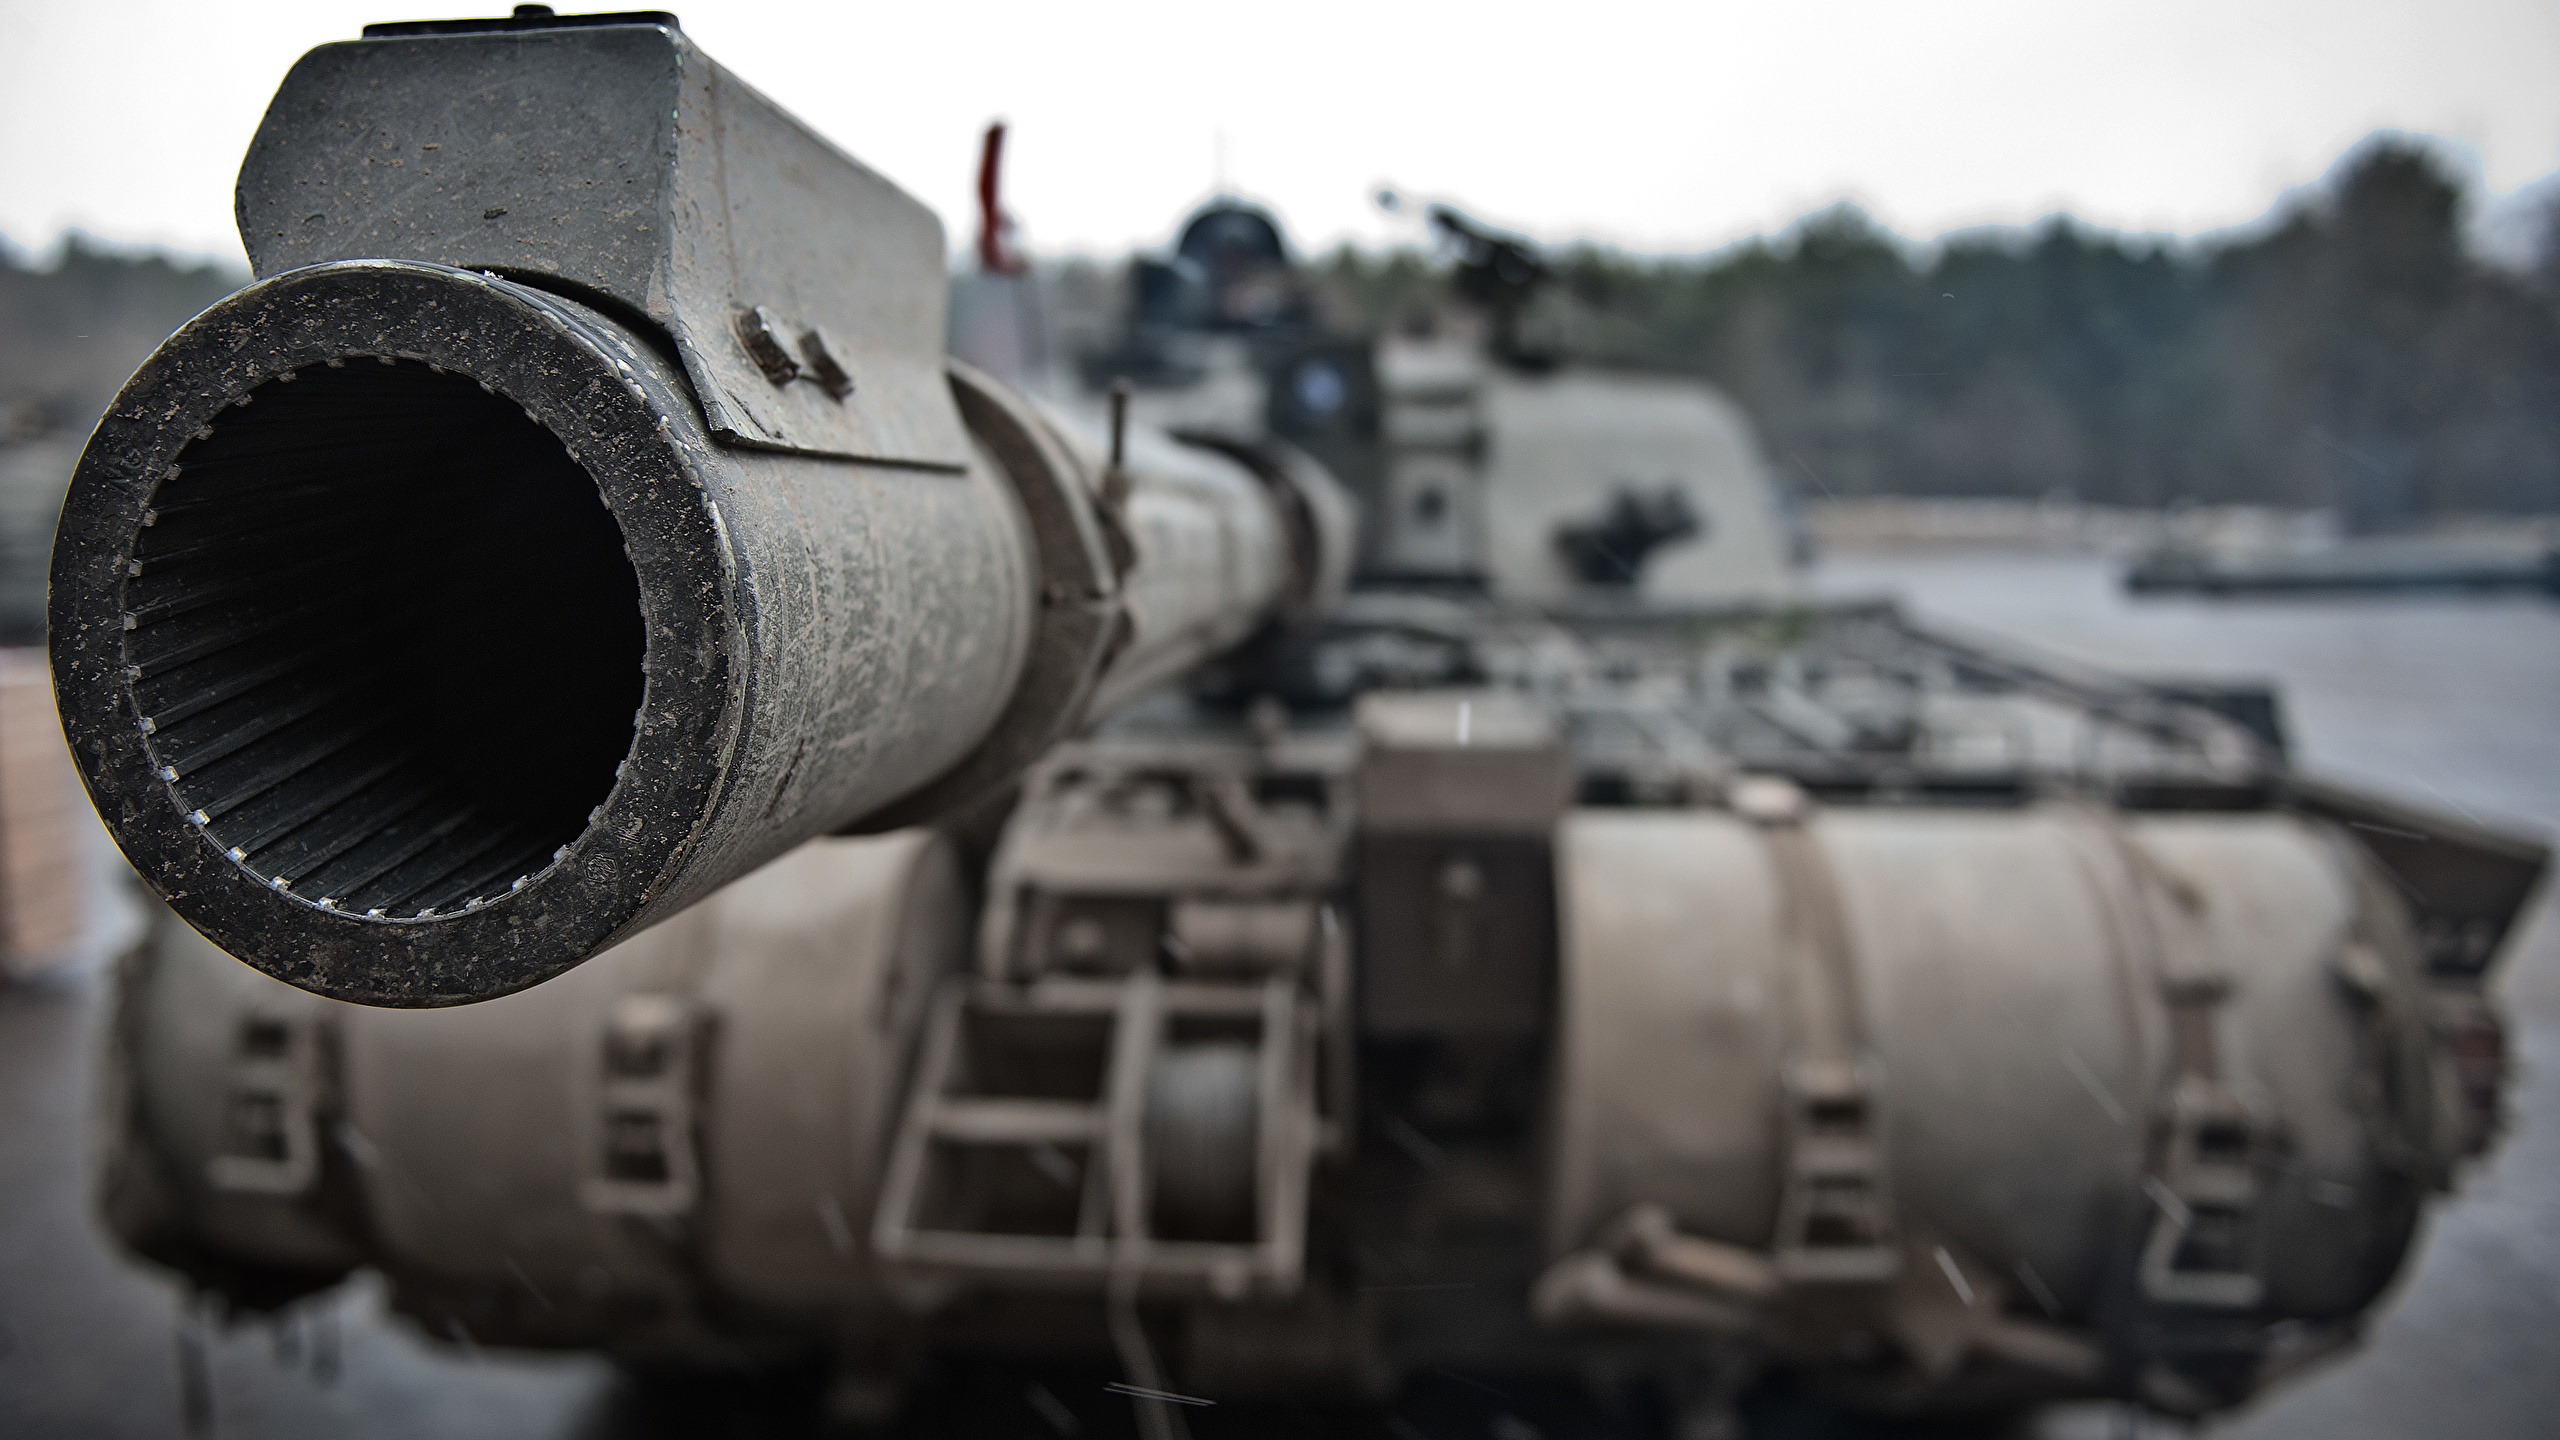 2560x1440 Tank En gros plan Challenger 2 Canon (arme à feu) militaire, Char de combat Armée